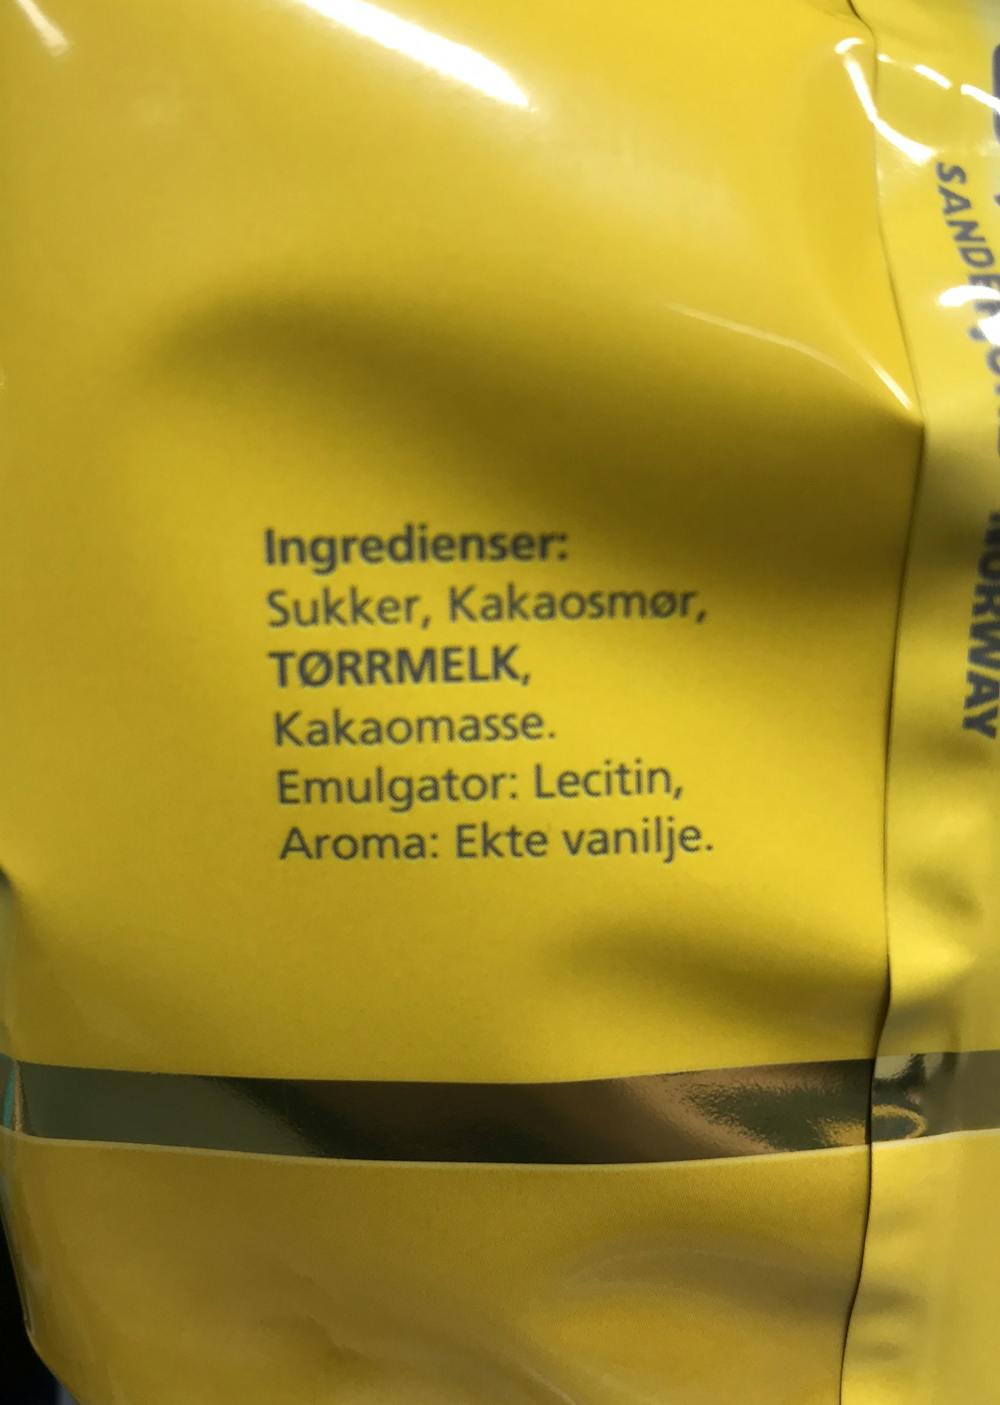 Ingredienslisten til Hval Melkesjokolade